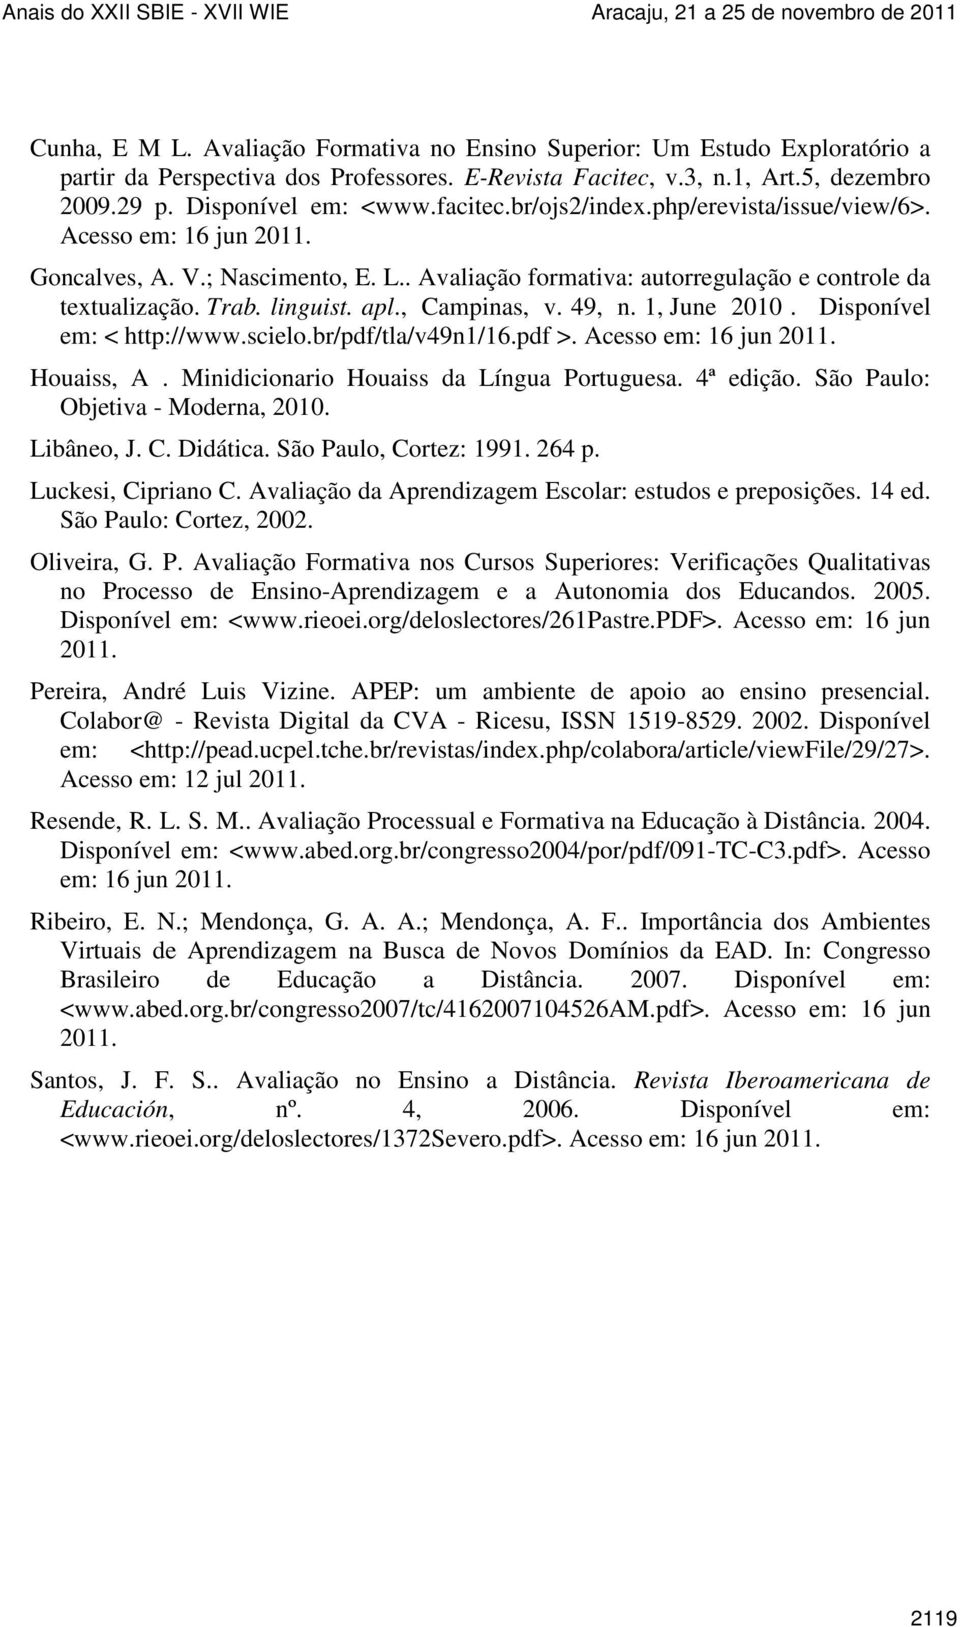 , Campinas, v. 49, n. 1, June 2010. Disponível em: < http://www.scielo.br/pdf/tla/v49n1/16.pdf >. Acesso em: 16 jun 2011. Houaiss, A. Minidicionario Houaiss da Língua Portuguesa. 4ª edição.